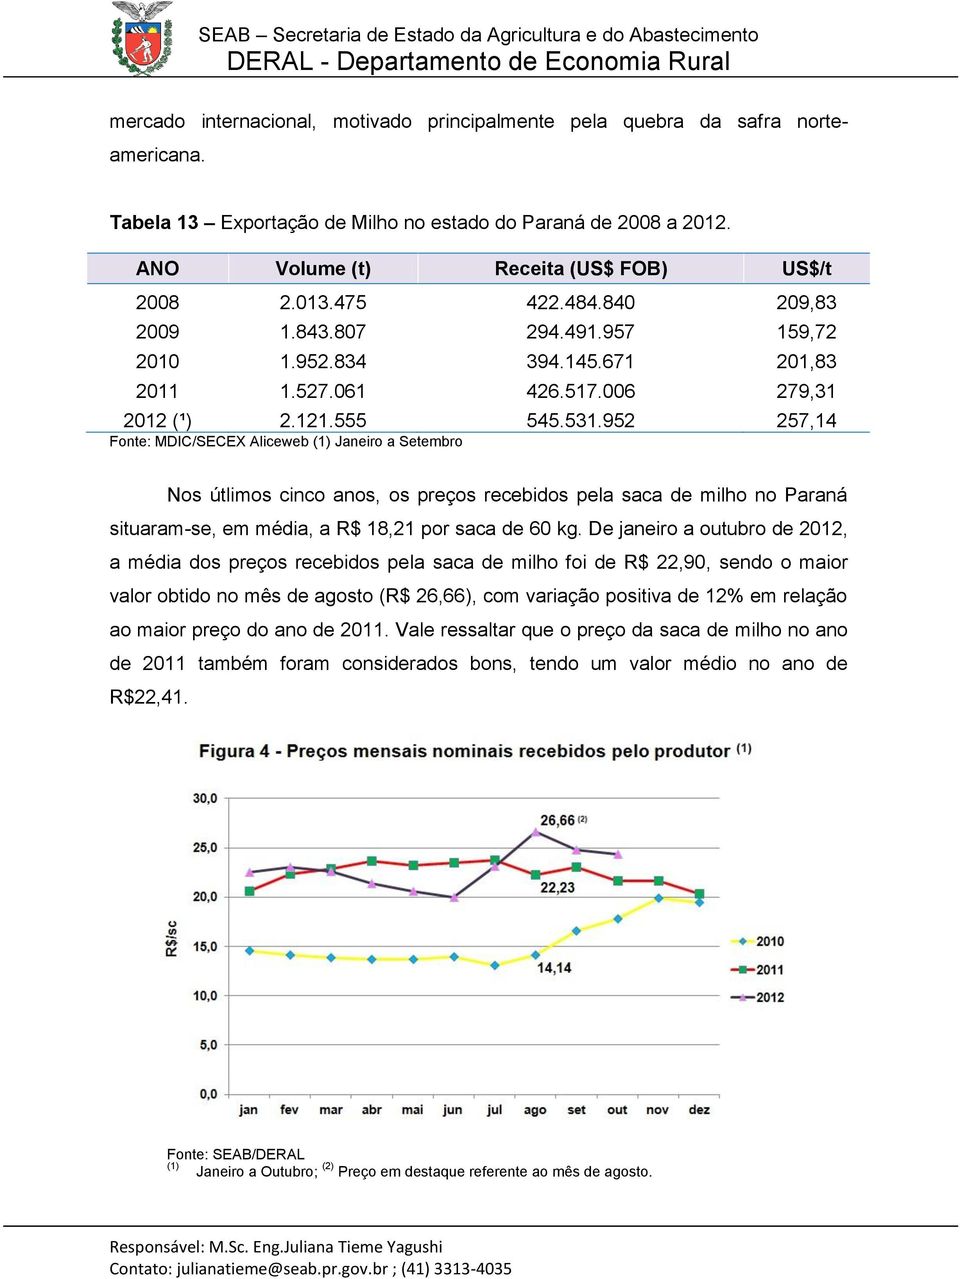 952 257,14 Fonte: MDIC/SECEX Aliceweb (1) Janeiro a Setembro Nos útlimos cinco anos, os preços recebidos pela saca de milho no Paraná situaram-se, em média, a R$ 18,21 por saca de 60 kg.